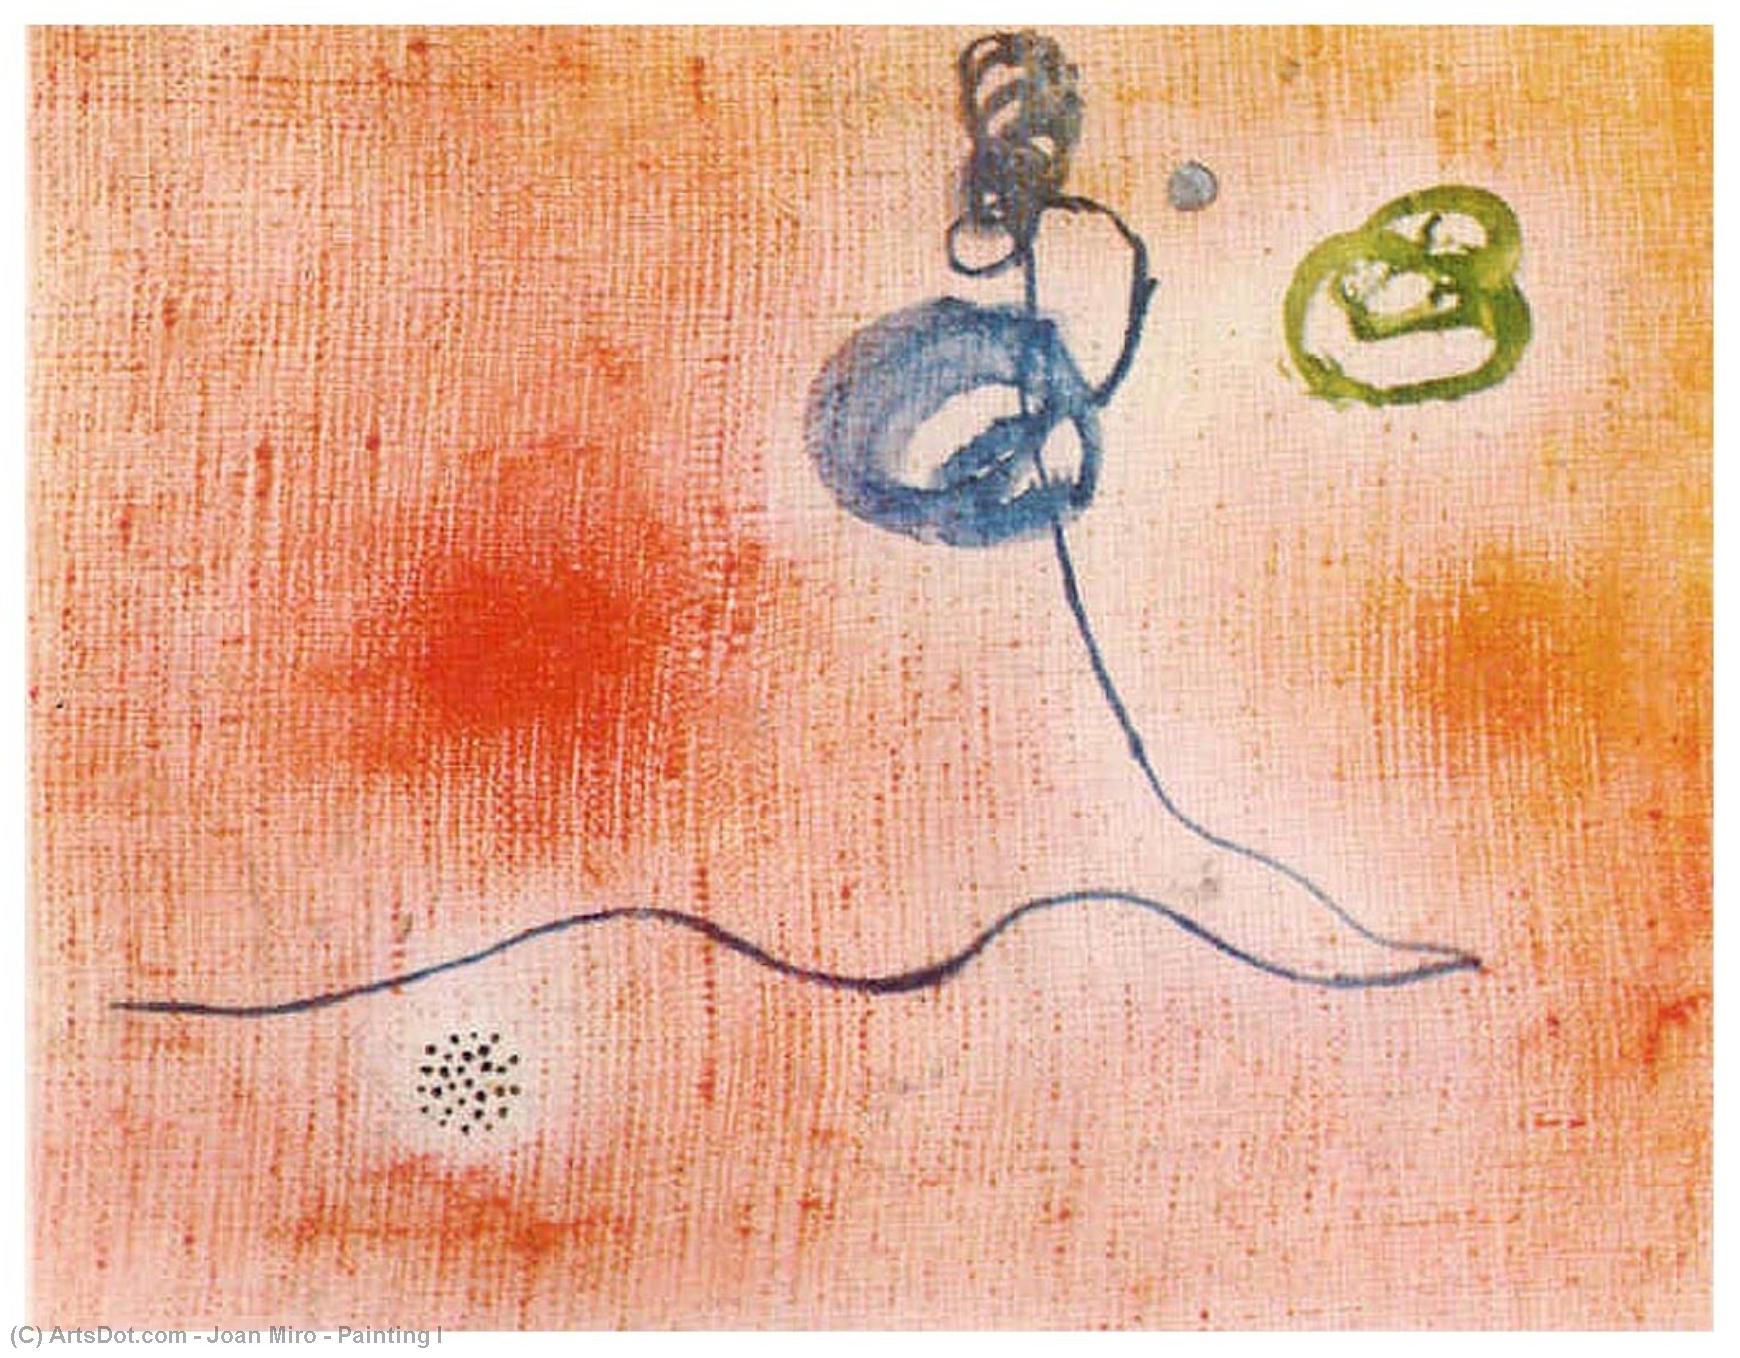 Wikoo.org - موسوعة الفنون الجميلة - اللوحة، العمل الفني Joan Miro - Painting I